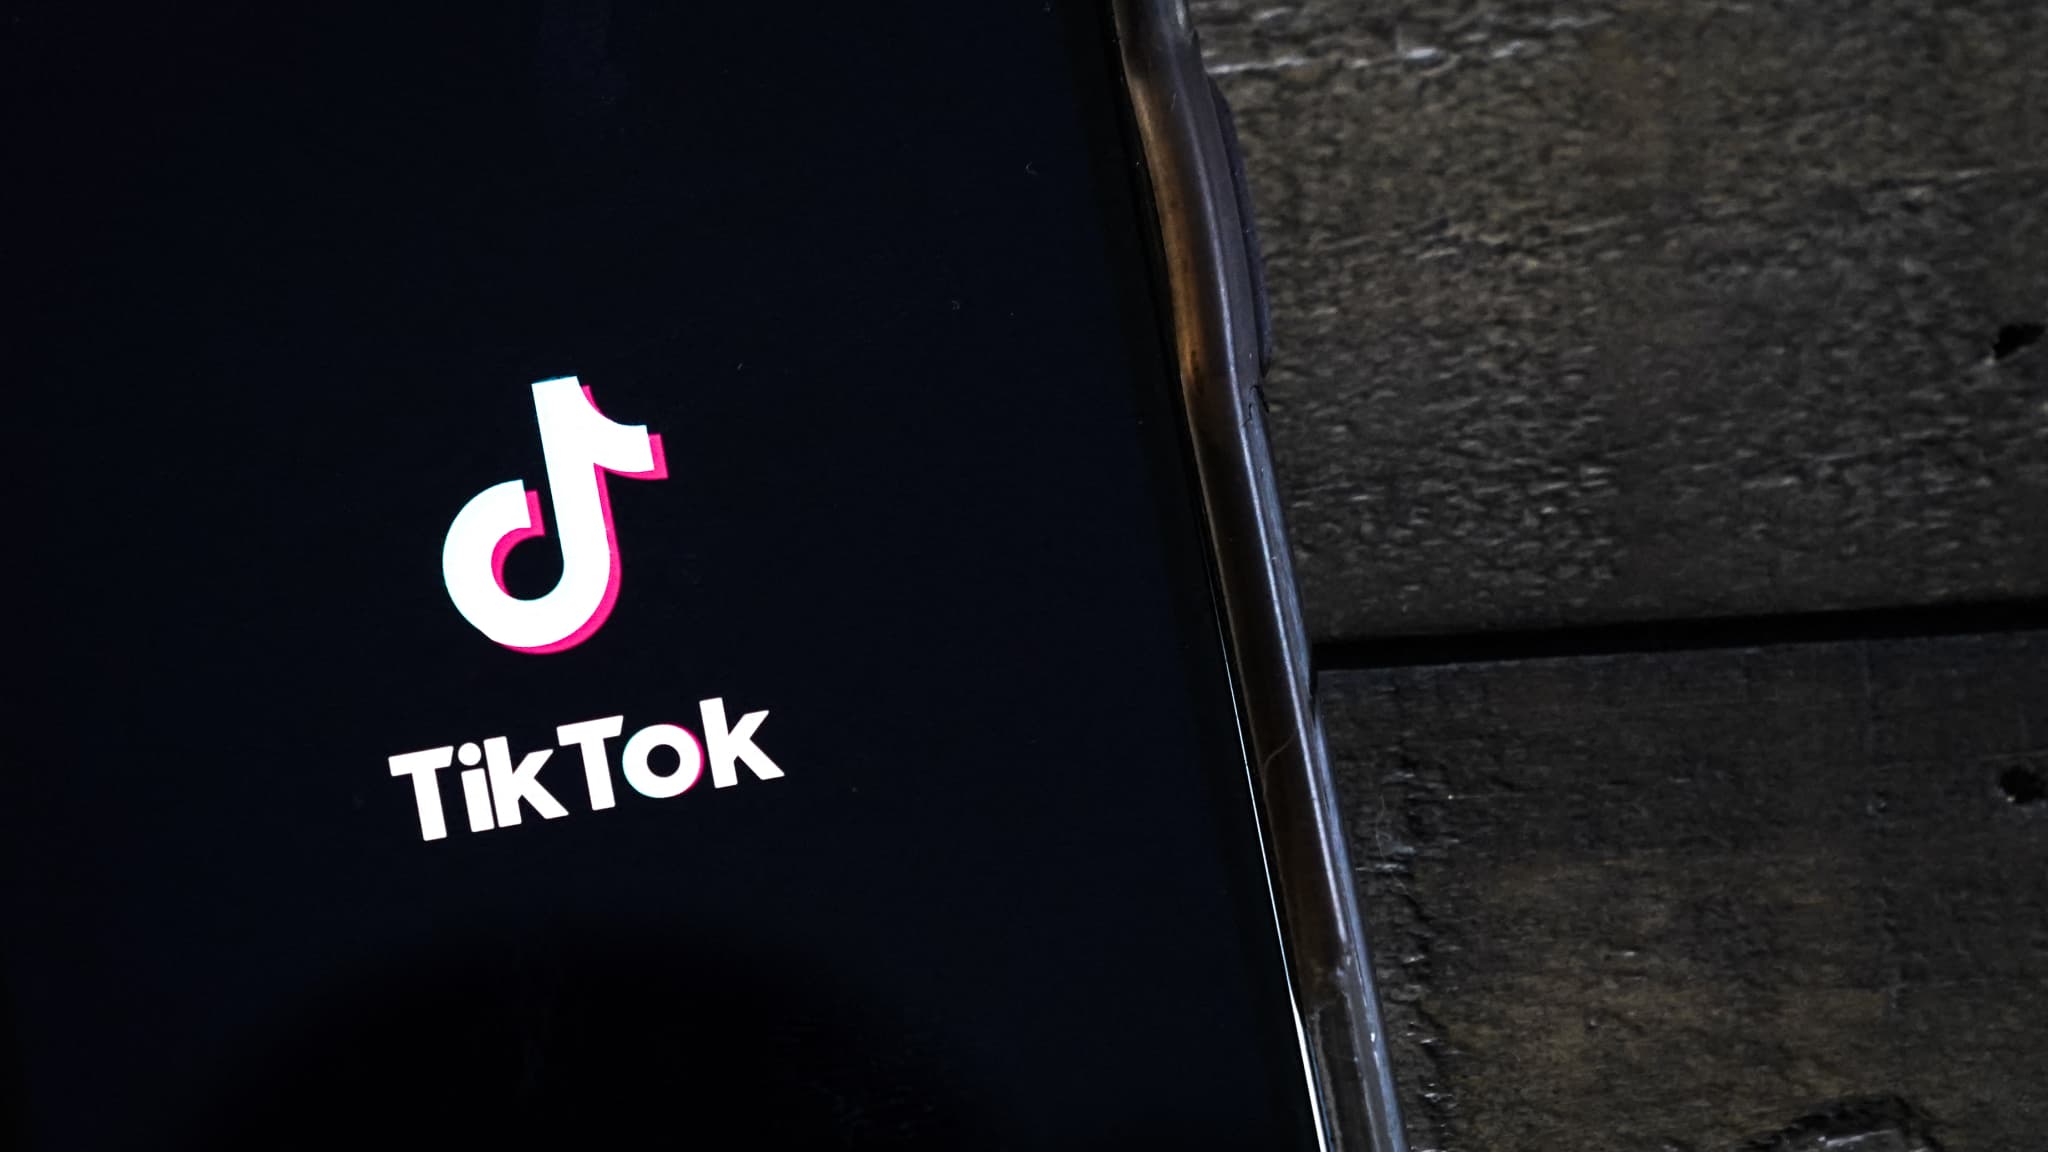 "Un risque identifié": le gouvernement britannique veut inciter ses employés à supprimer TikTok